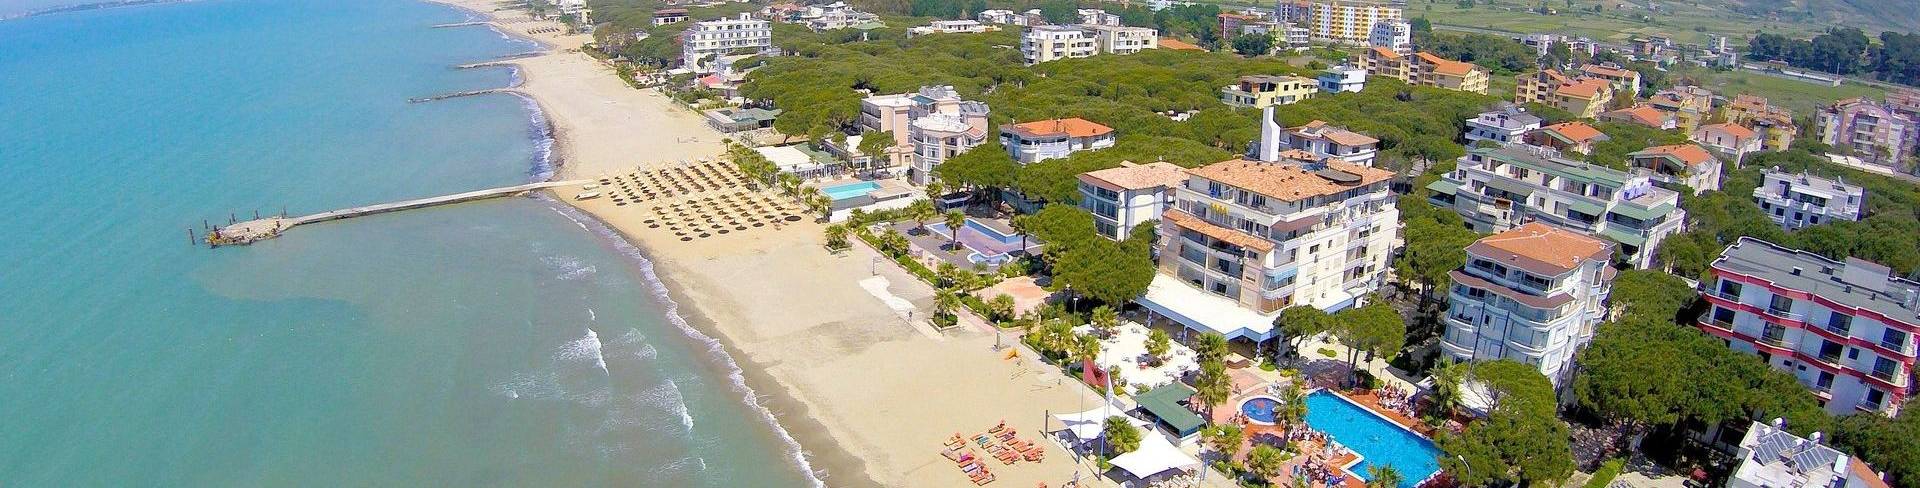 Дуррес - пляжный курорт в Албании